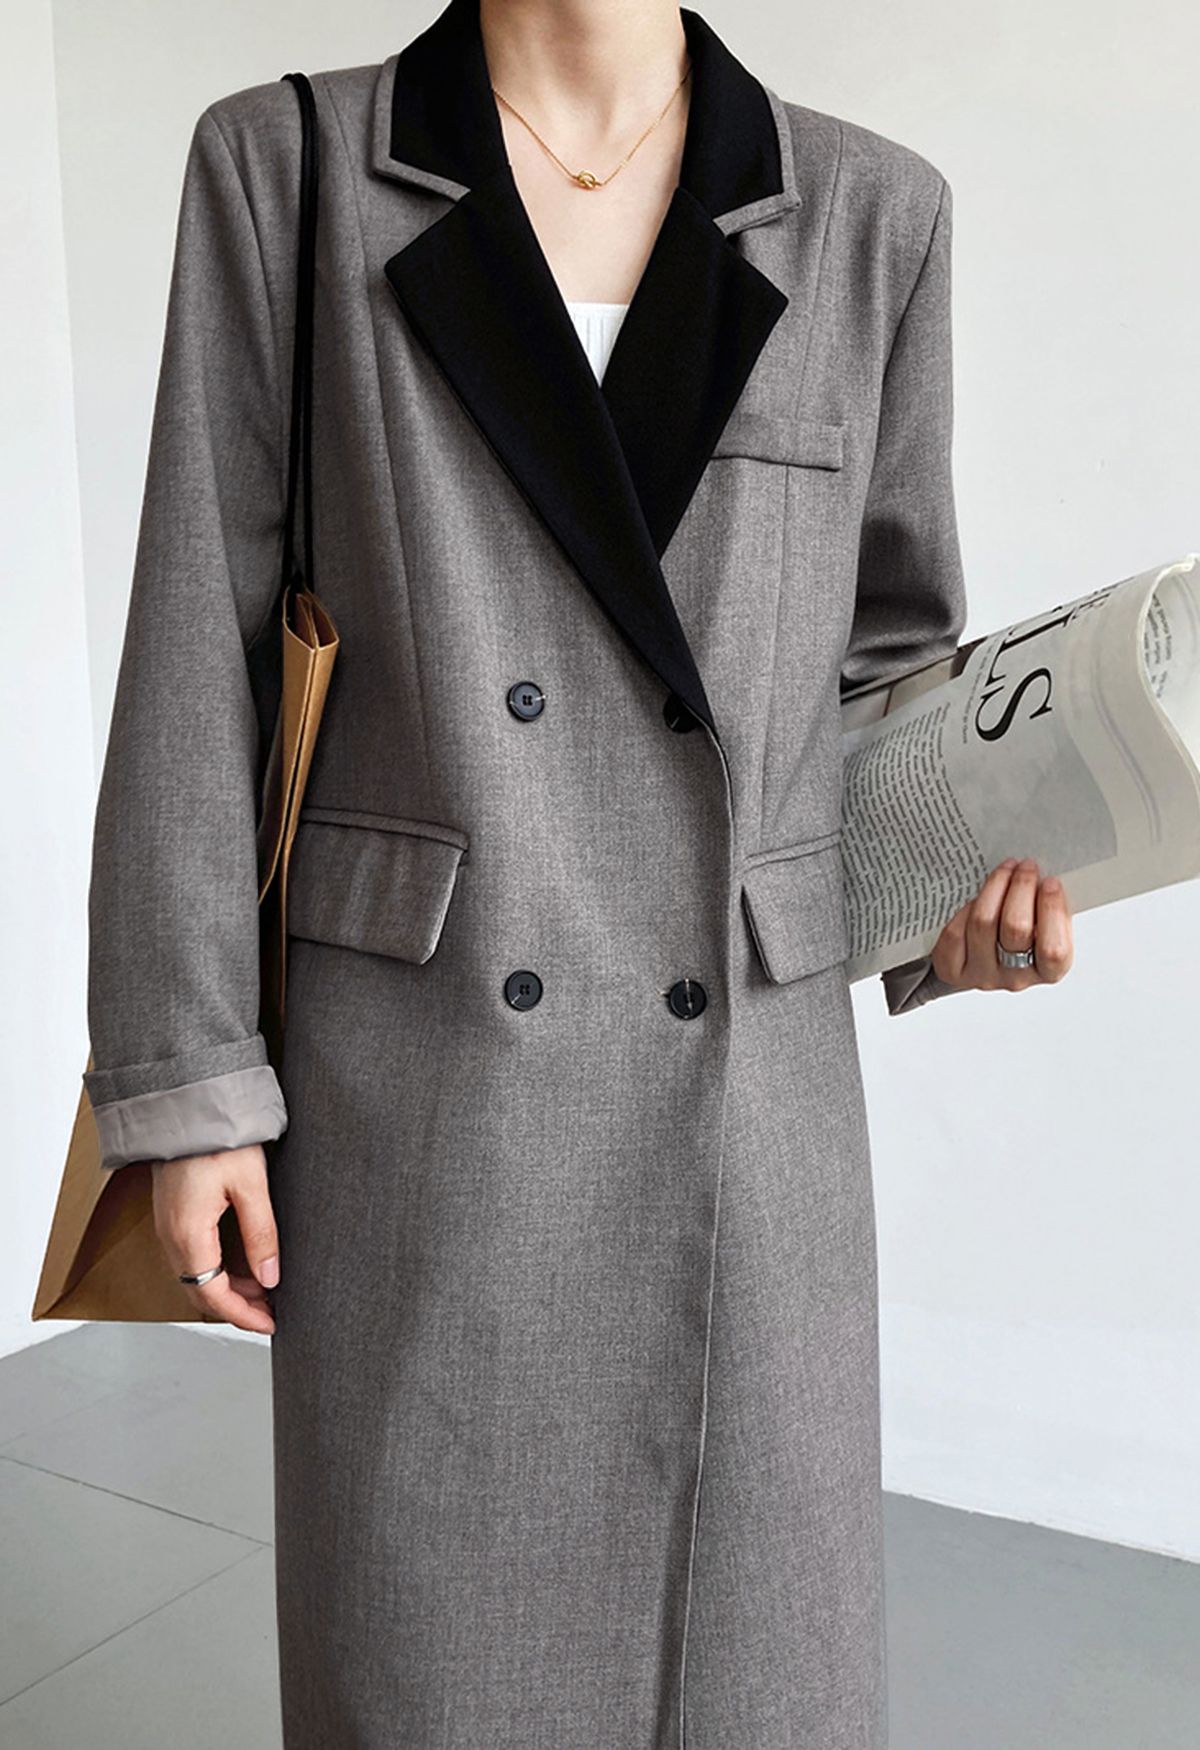 Abrigo largo de solapa con muesca en contraste en gris